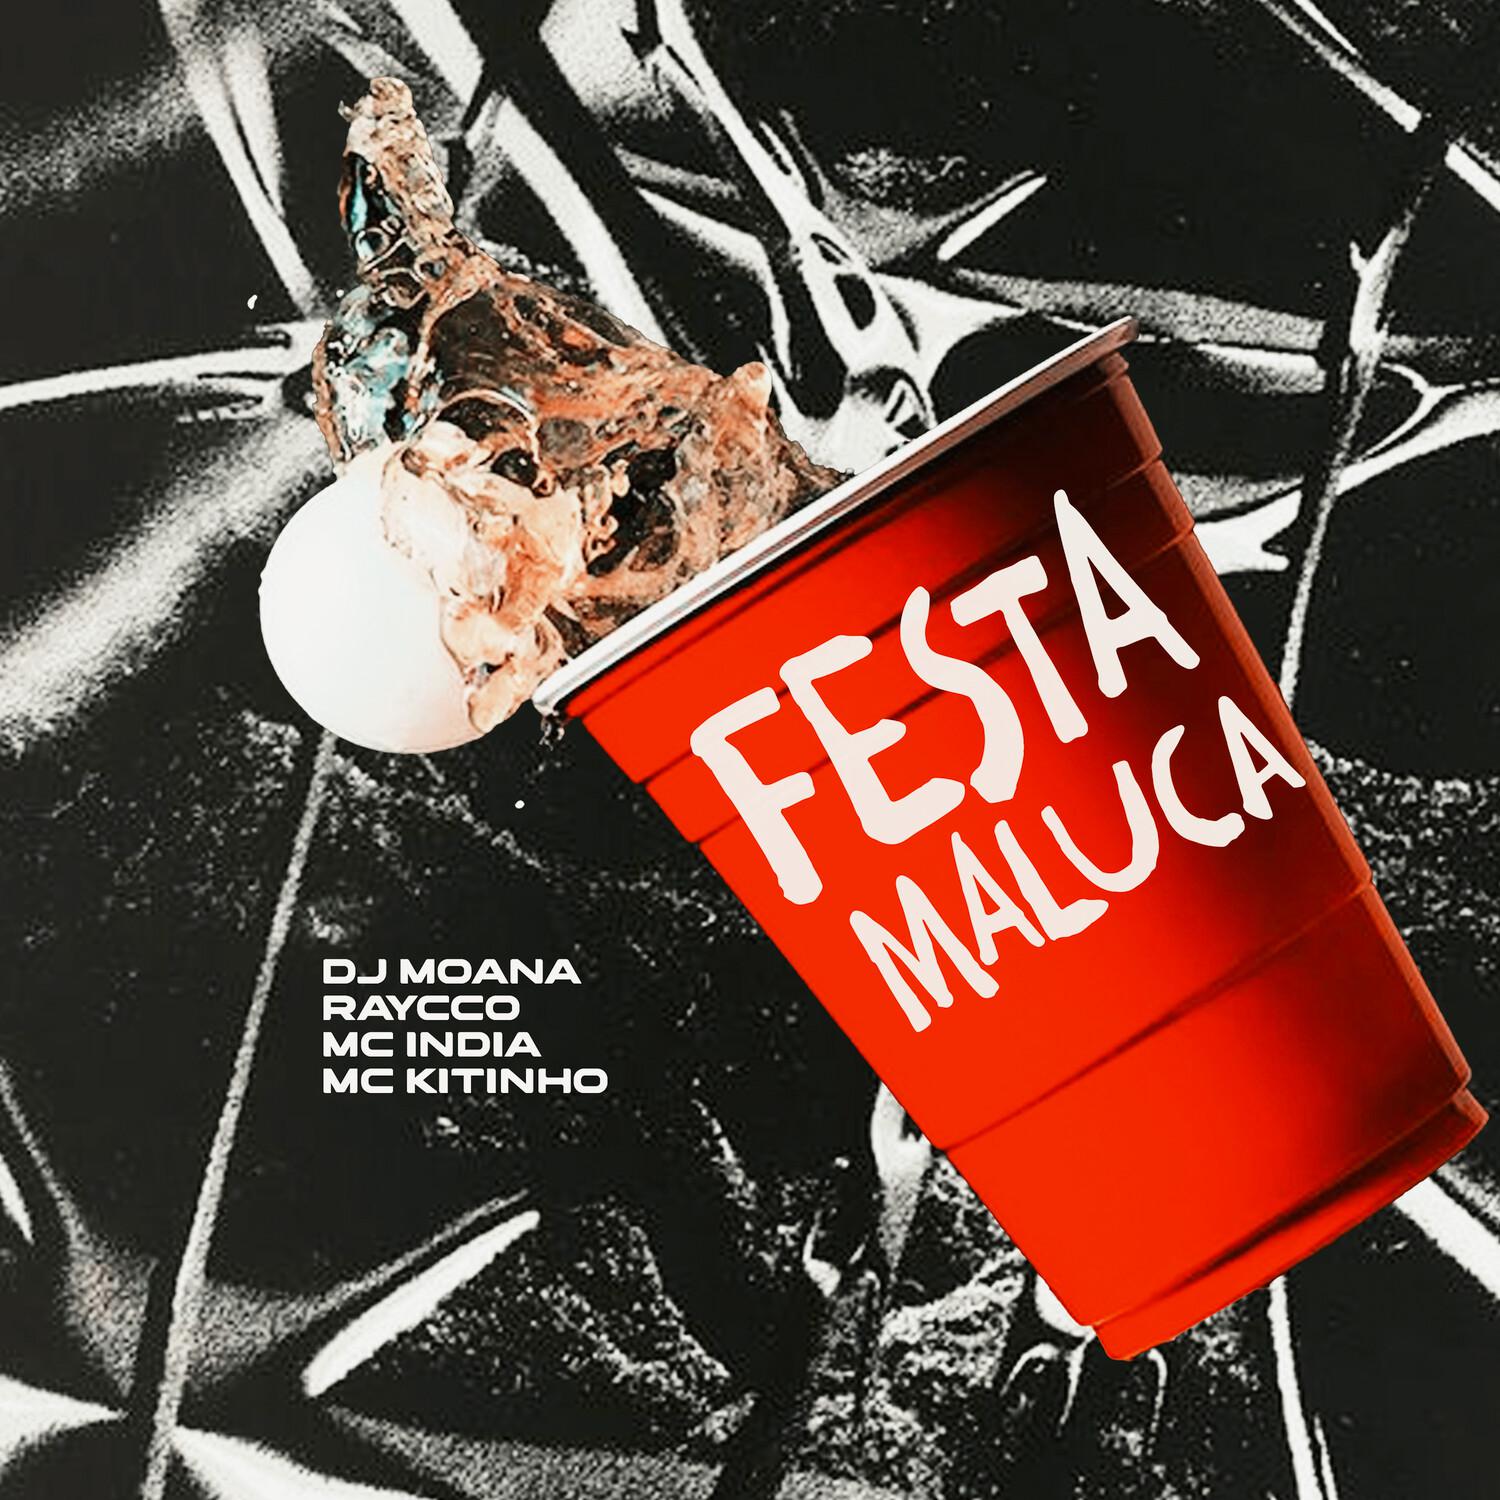 DJ Moana - Festa Maluca